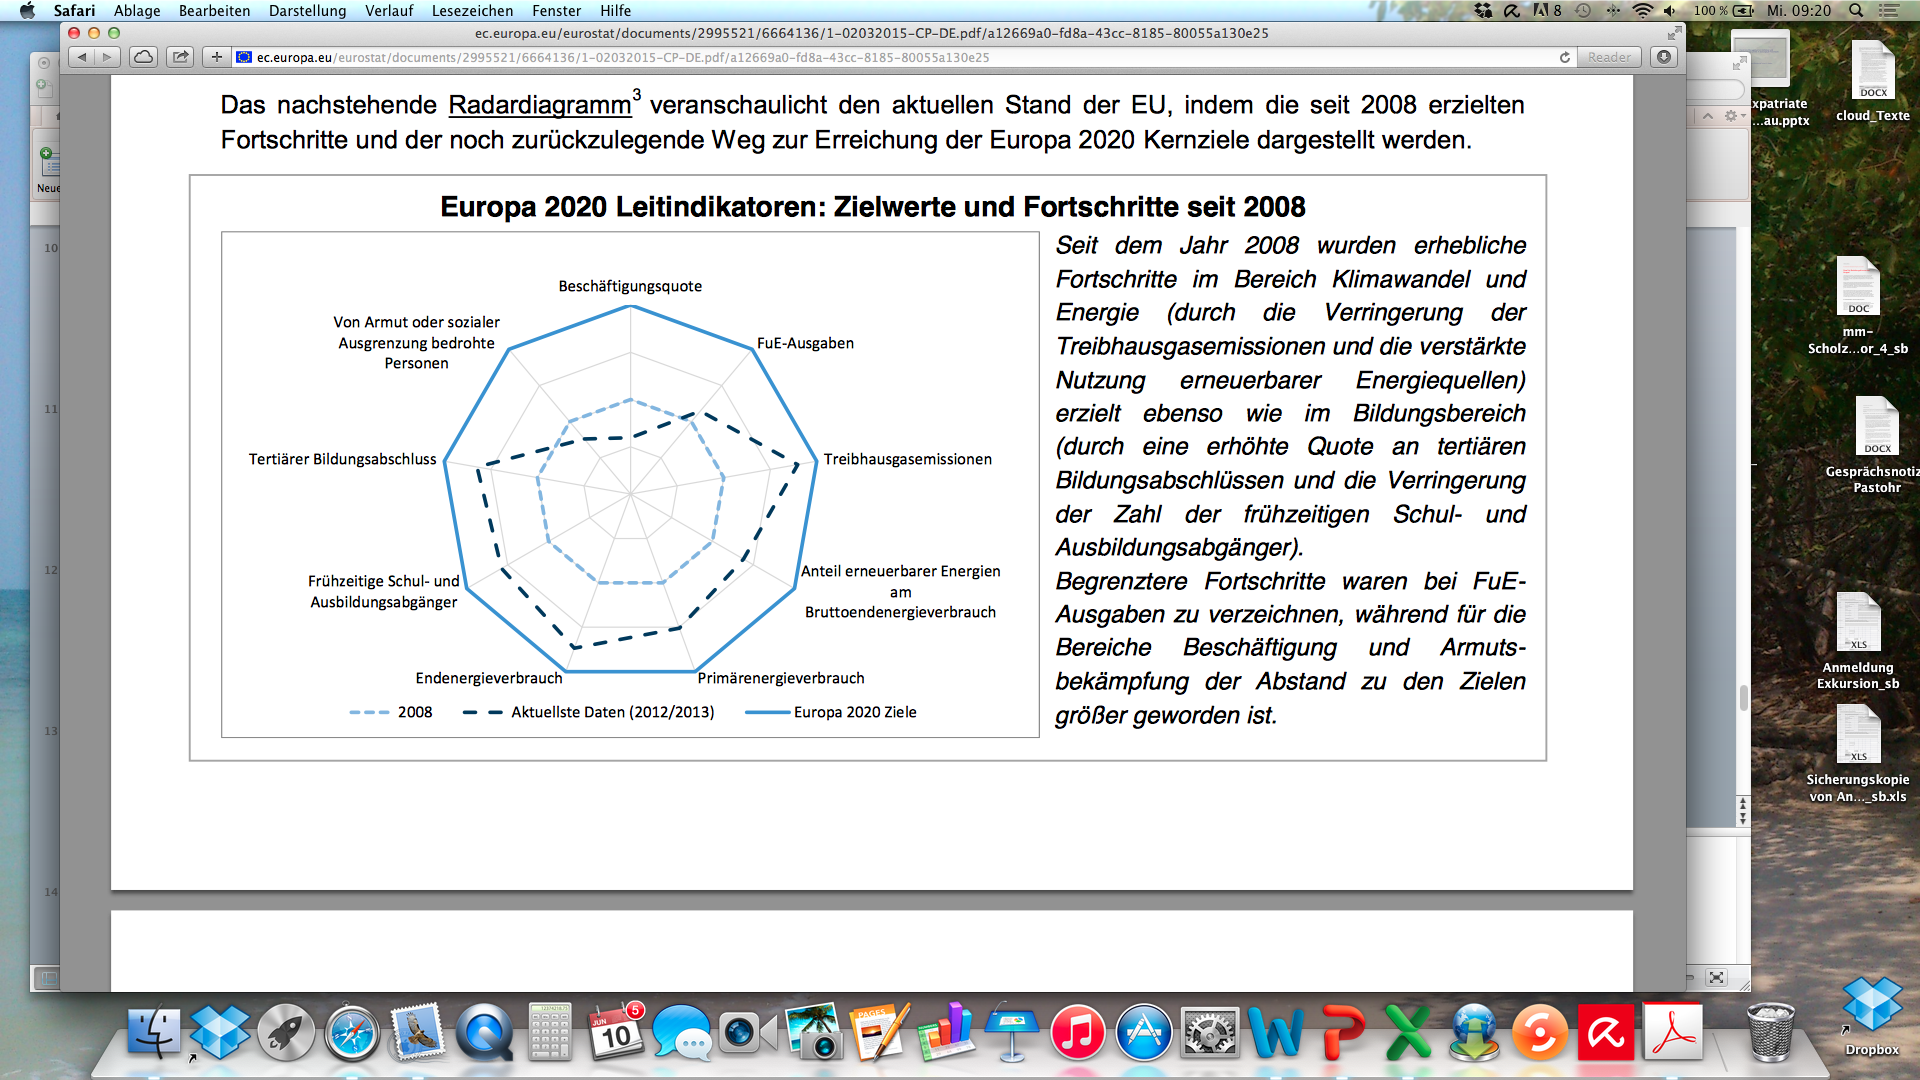 rigor.relevance @ orga.uni-sb.de 1. Europa verstehen: Umsetzung Europa 2020 Quelle: http://ec.europa.